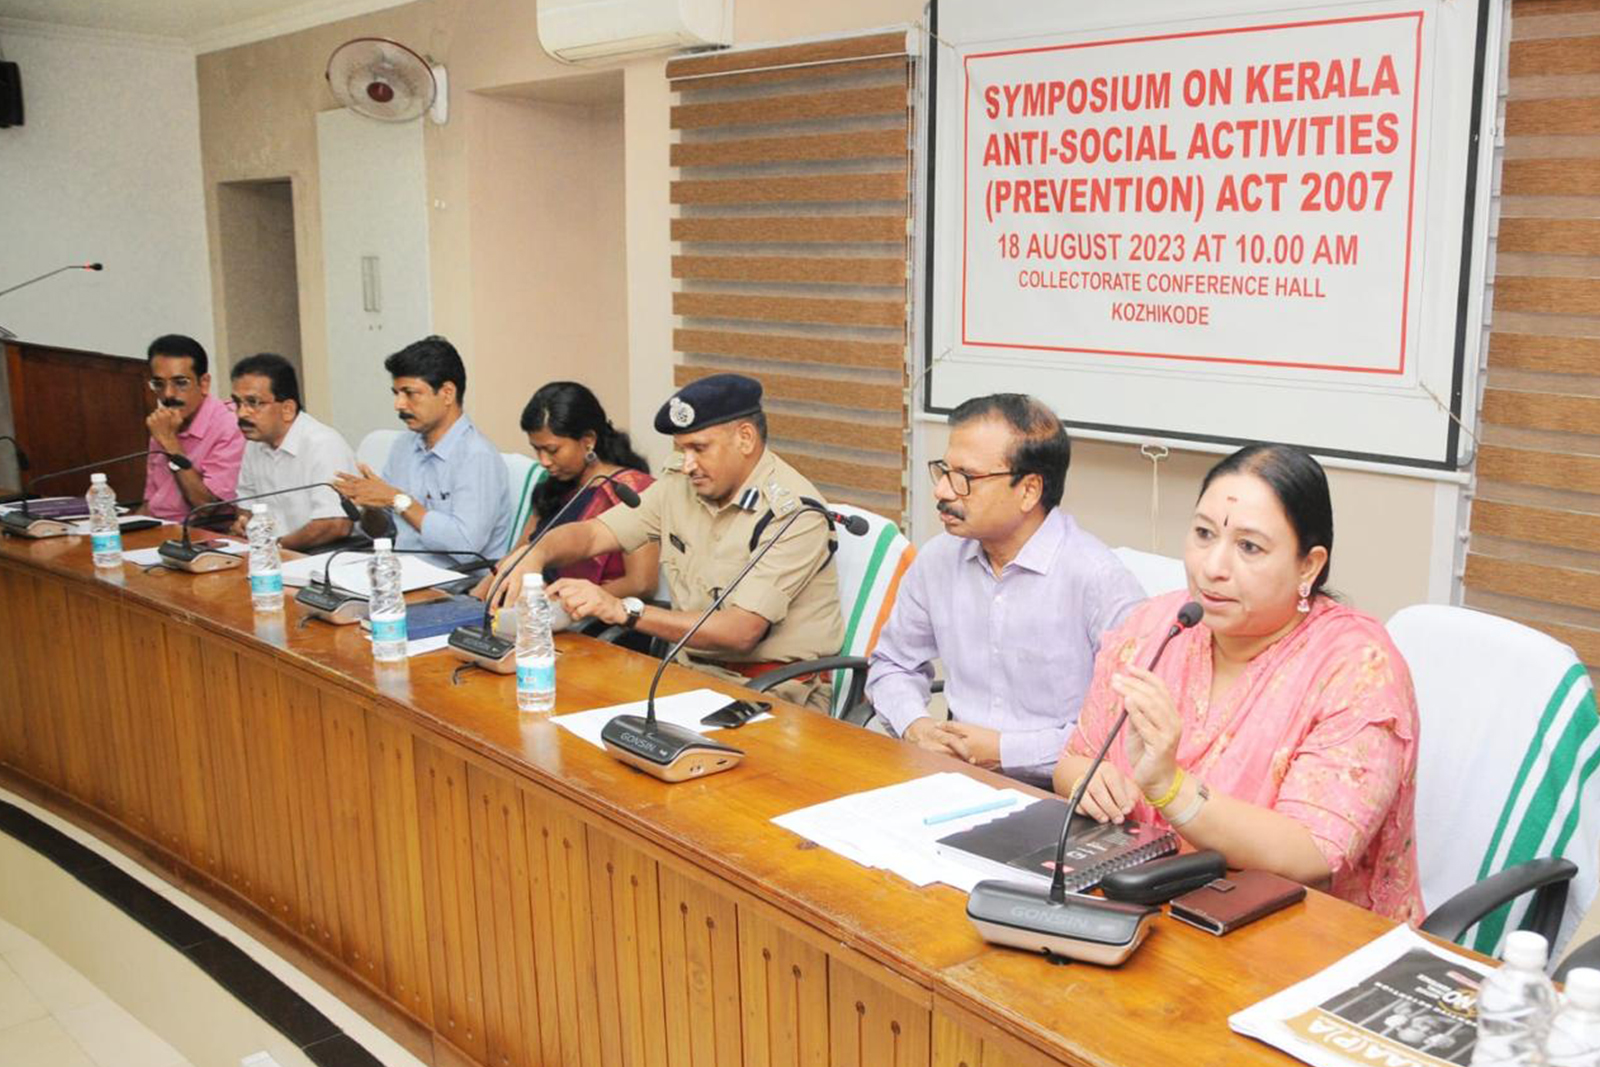 Symposium on Kaapa act held at Kozhikode